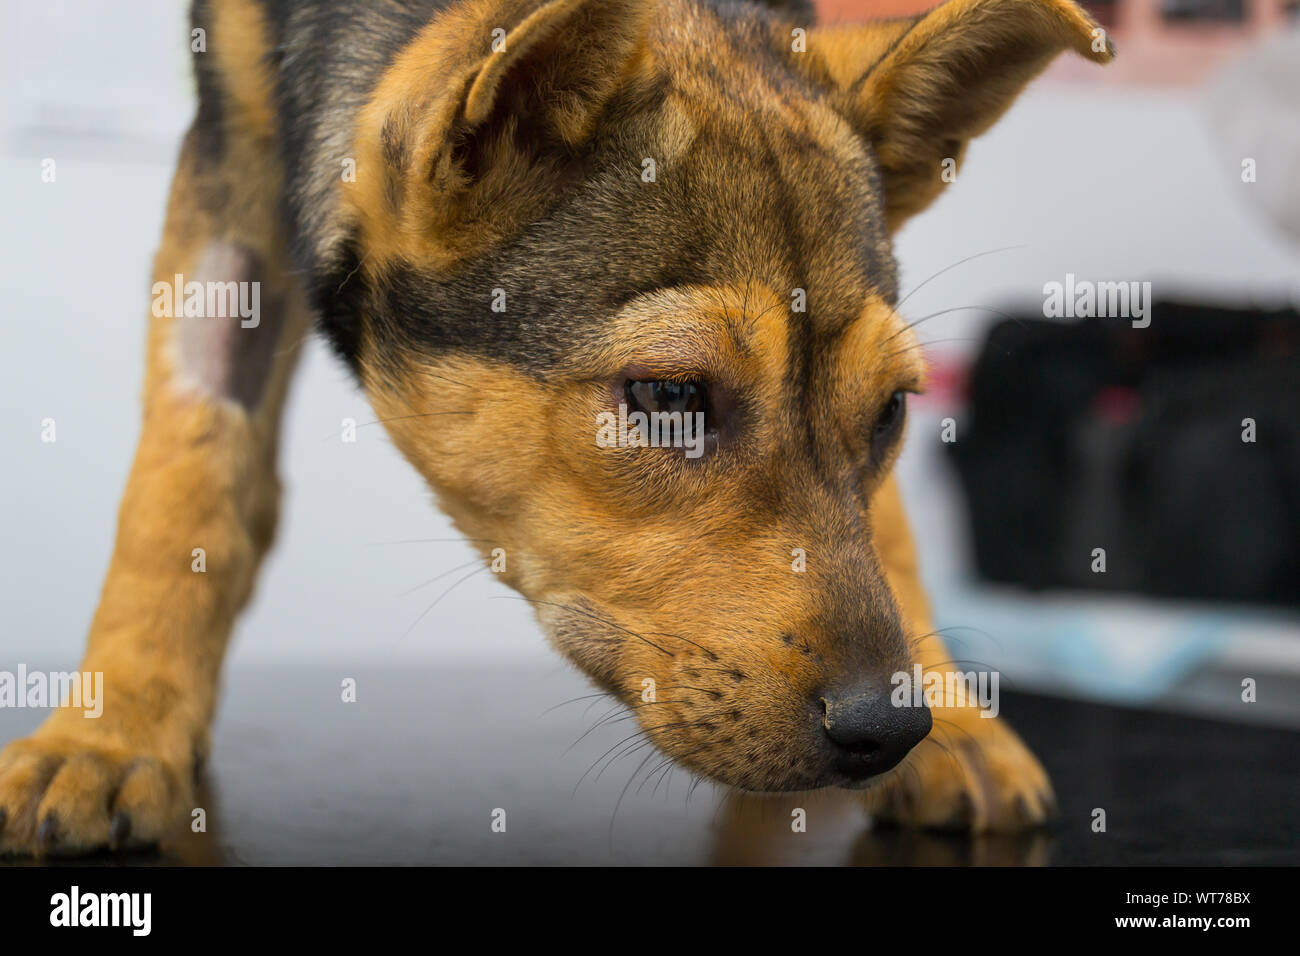 Hund mit anaphylaktische Reaktion nach Vitamin K-Einspritzung  Stockfotografie - Alamy